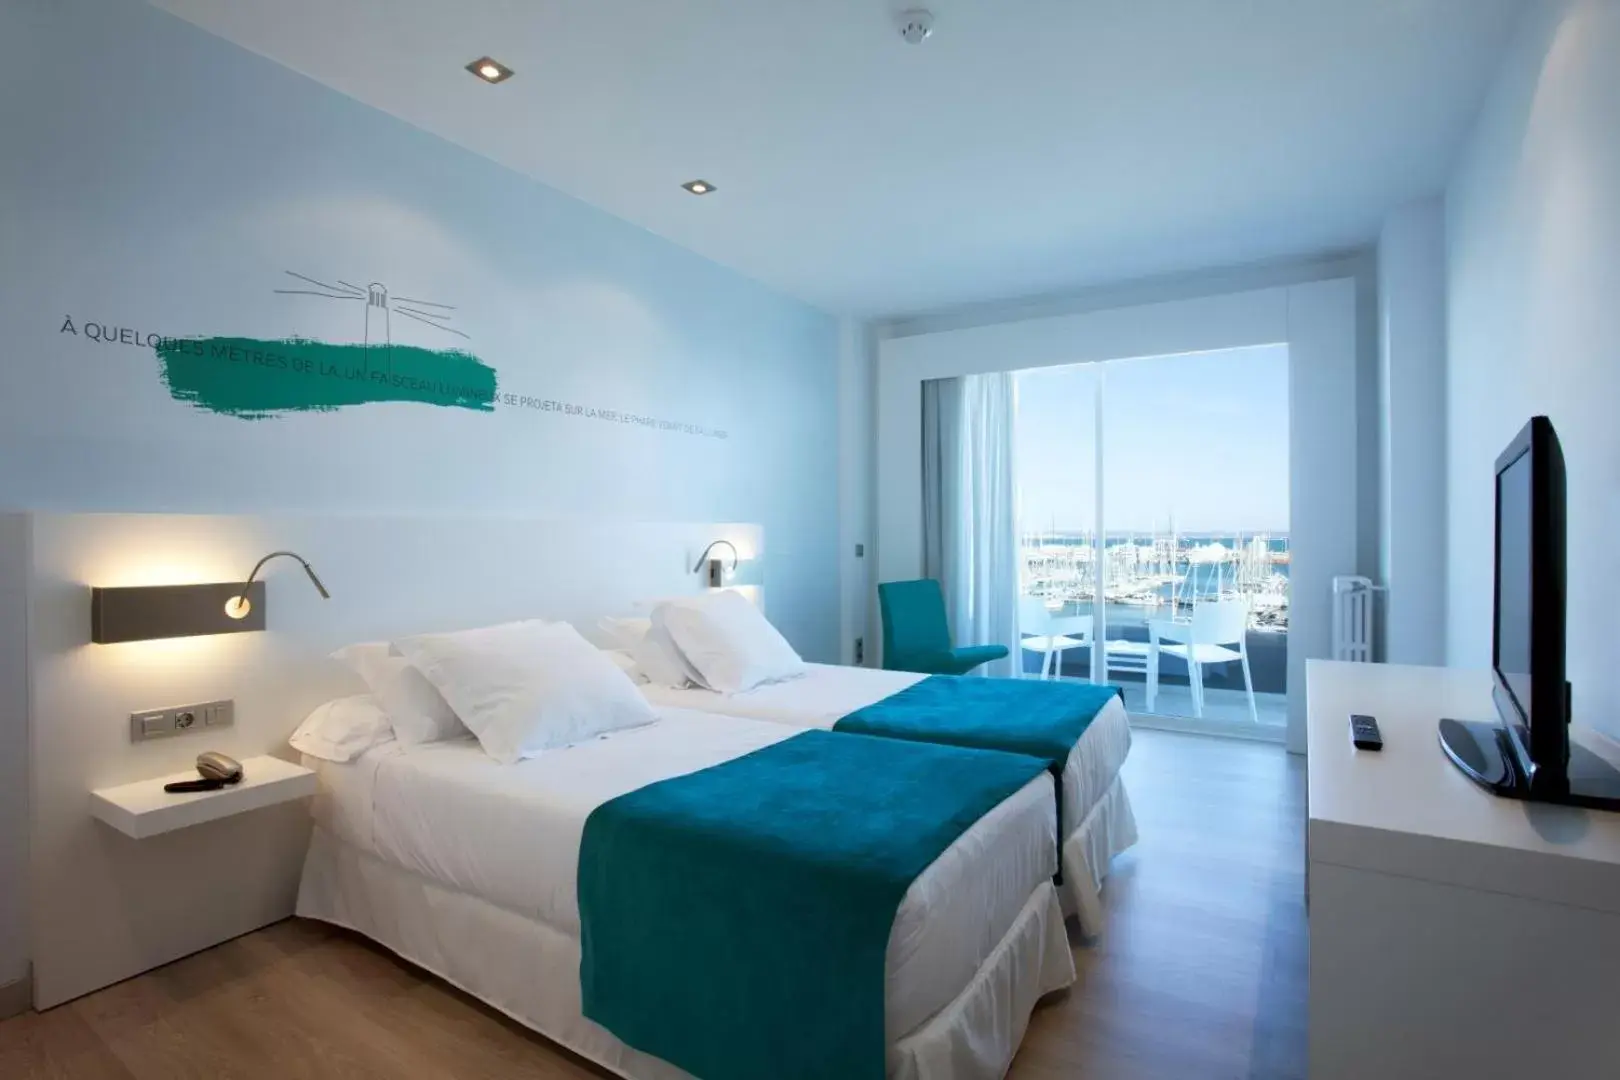 Bedroom, Room Photo in Hotel Costa Azul